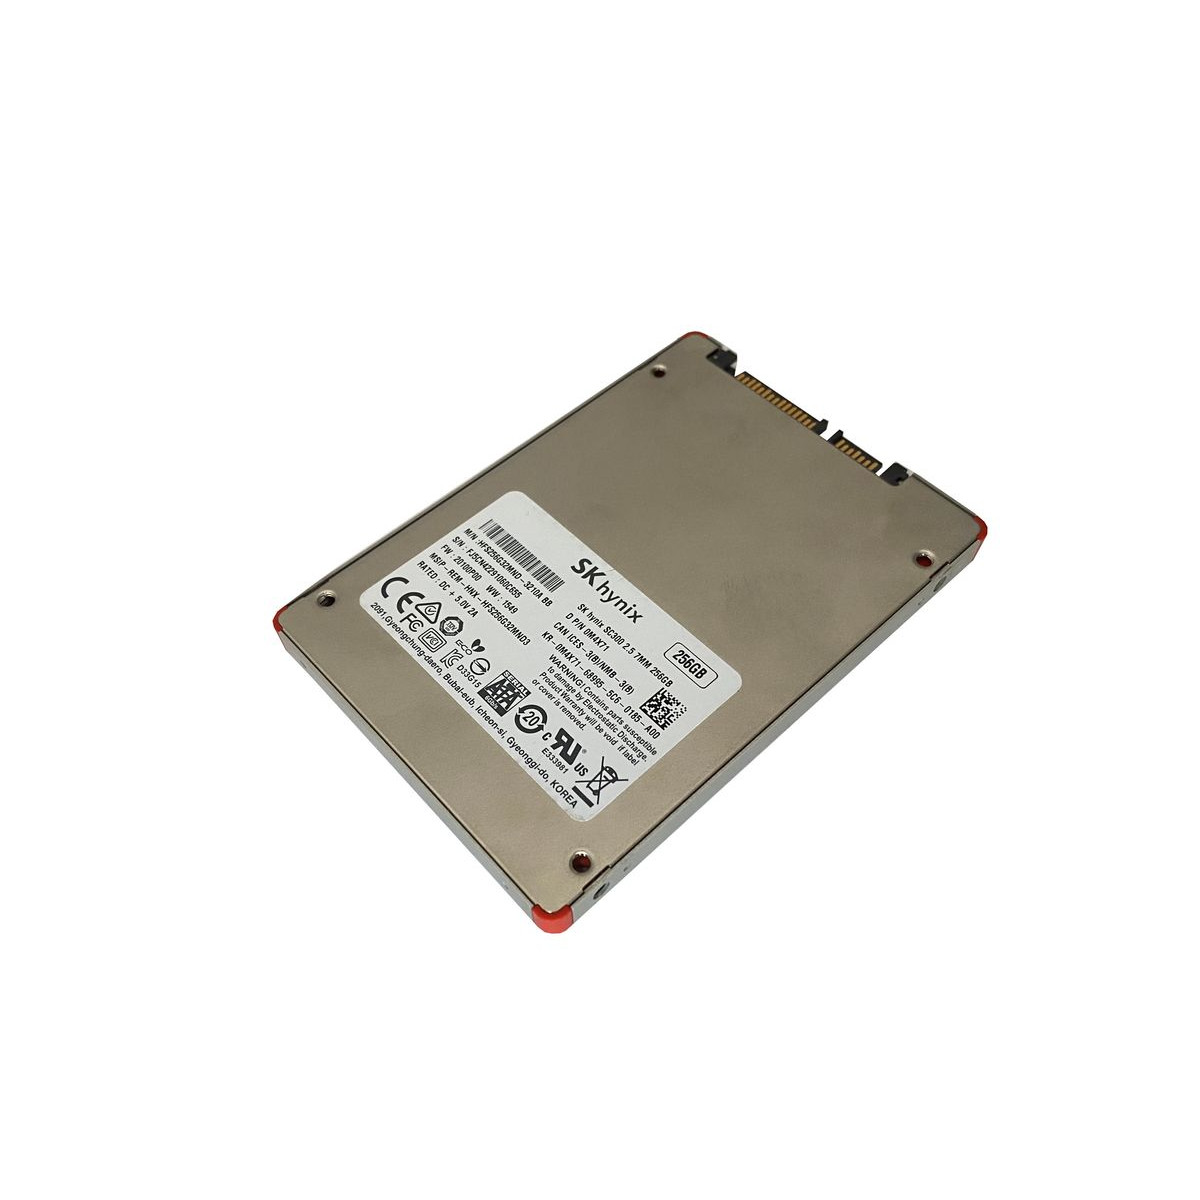 DYSK DELL HYNIX SC300 256GB SSD SATA 6G 2,5 0M4X71